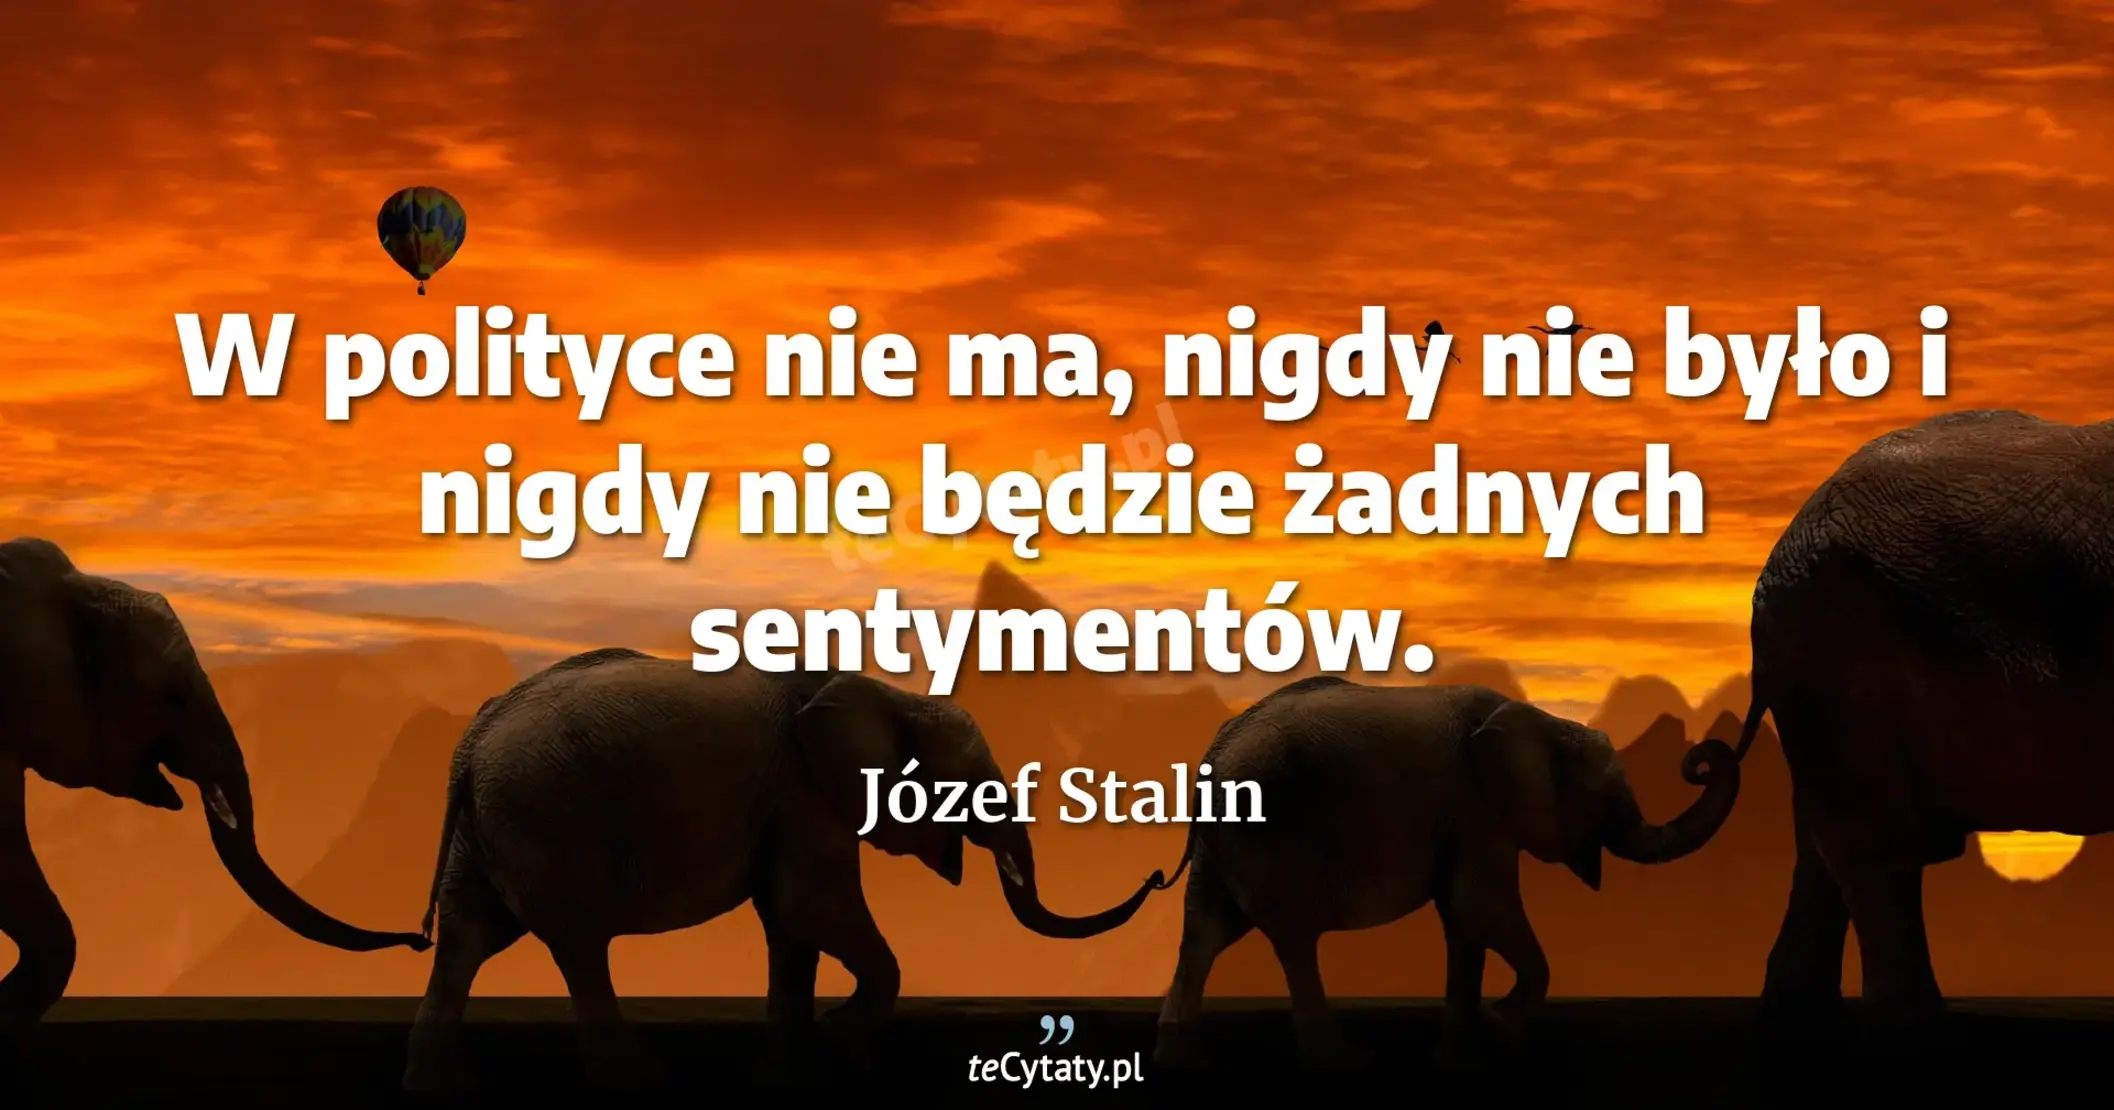 W polityce nie ma, nigdy nie było i nigdy nie będzie żadnych sentymentów. - Józef Stalin